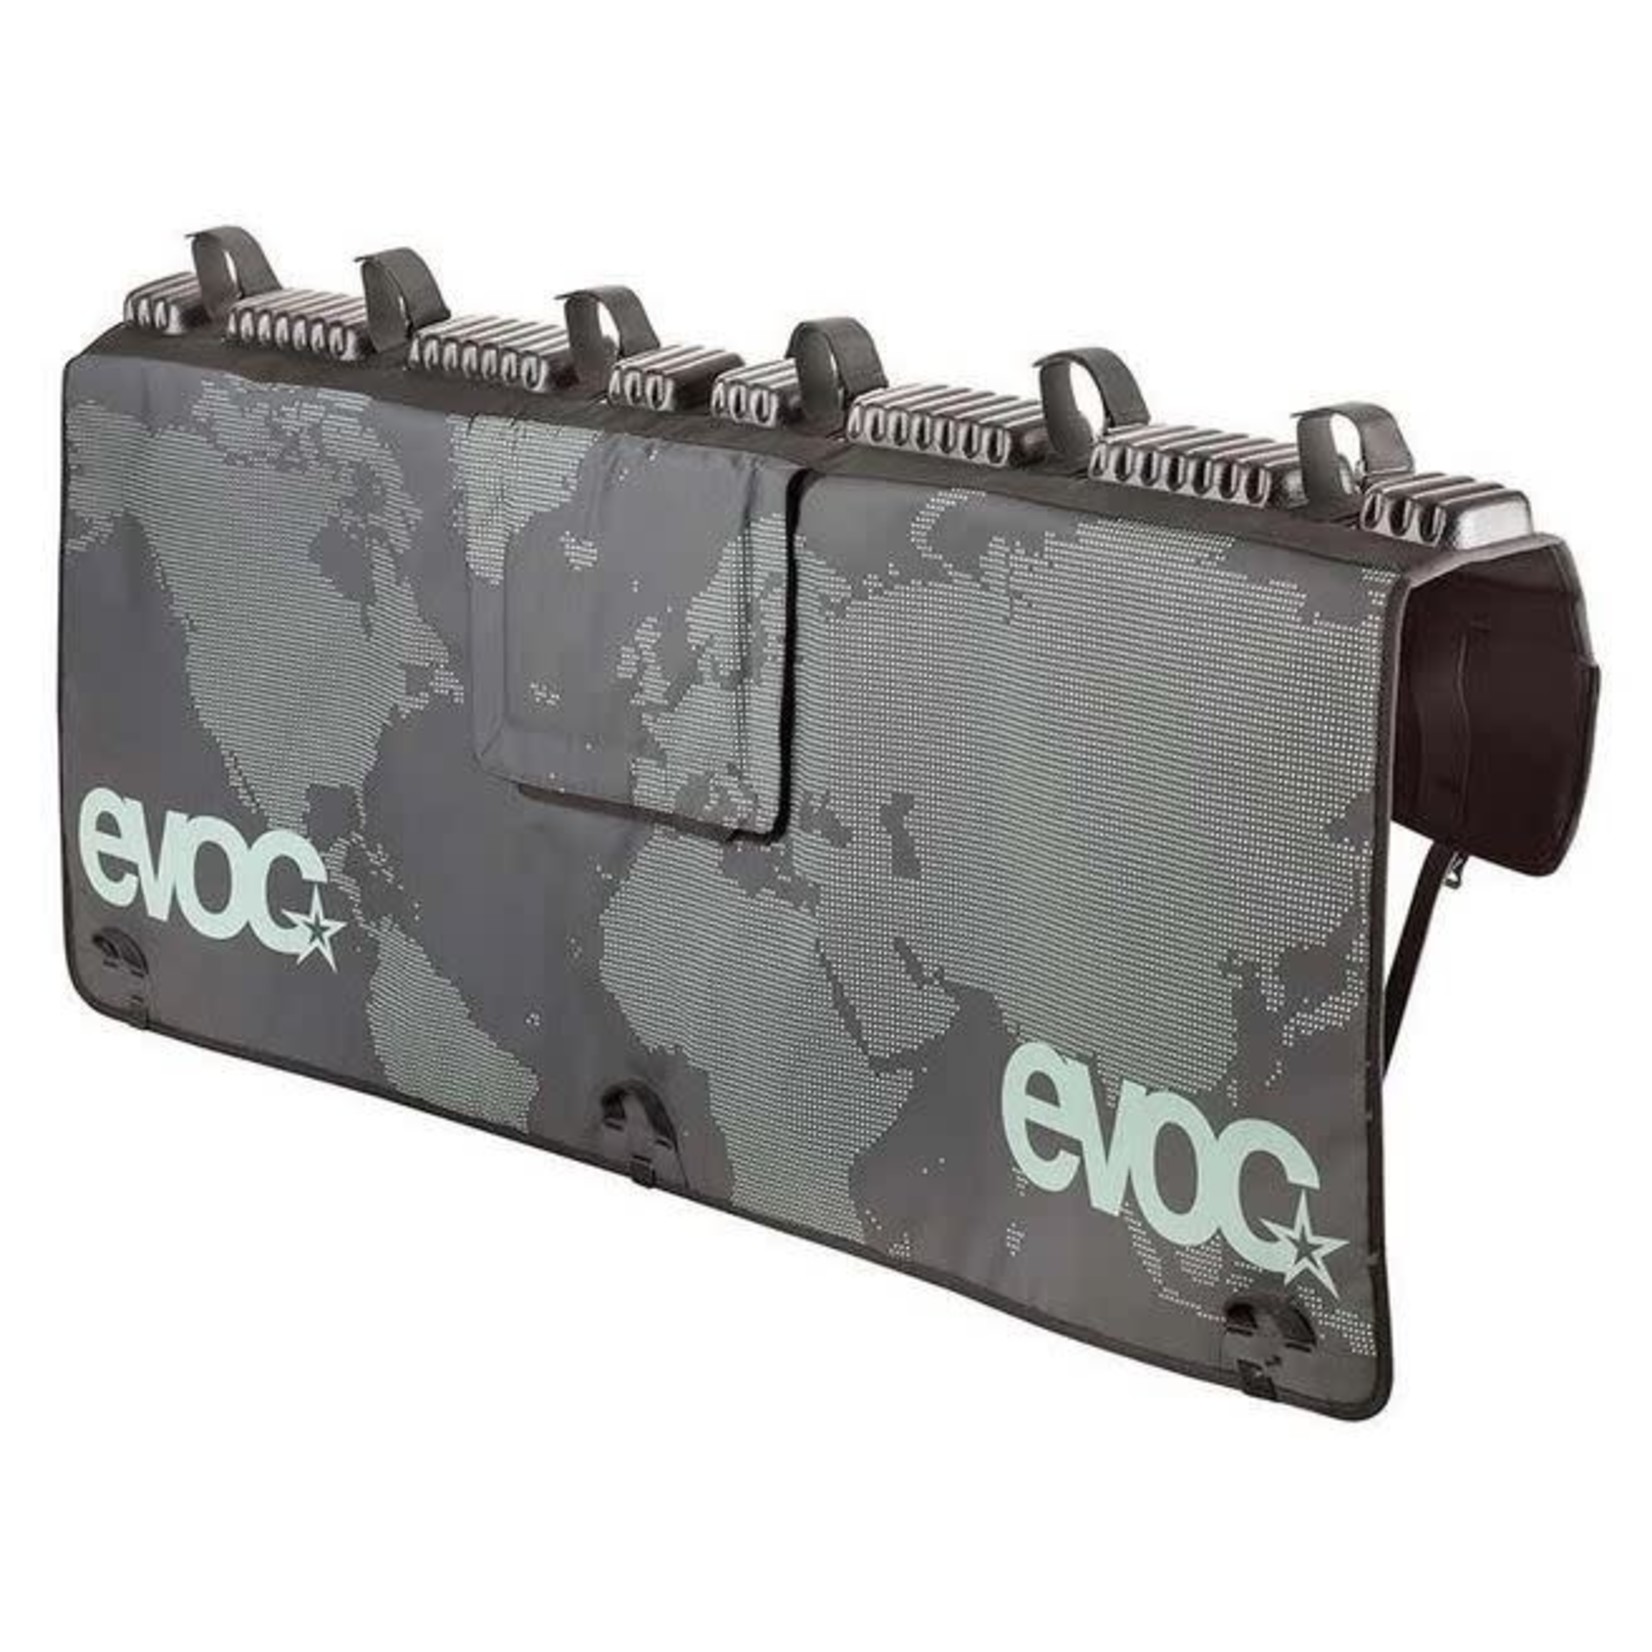 EVOC, Tailgate pad, Black, XL (160x100x2cm)